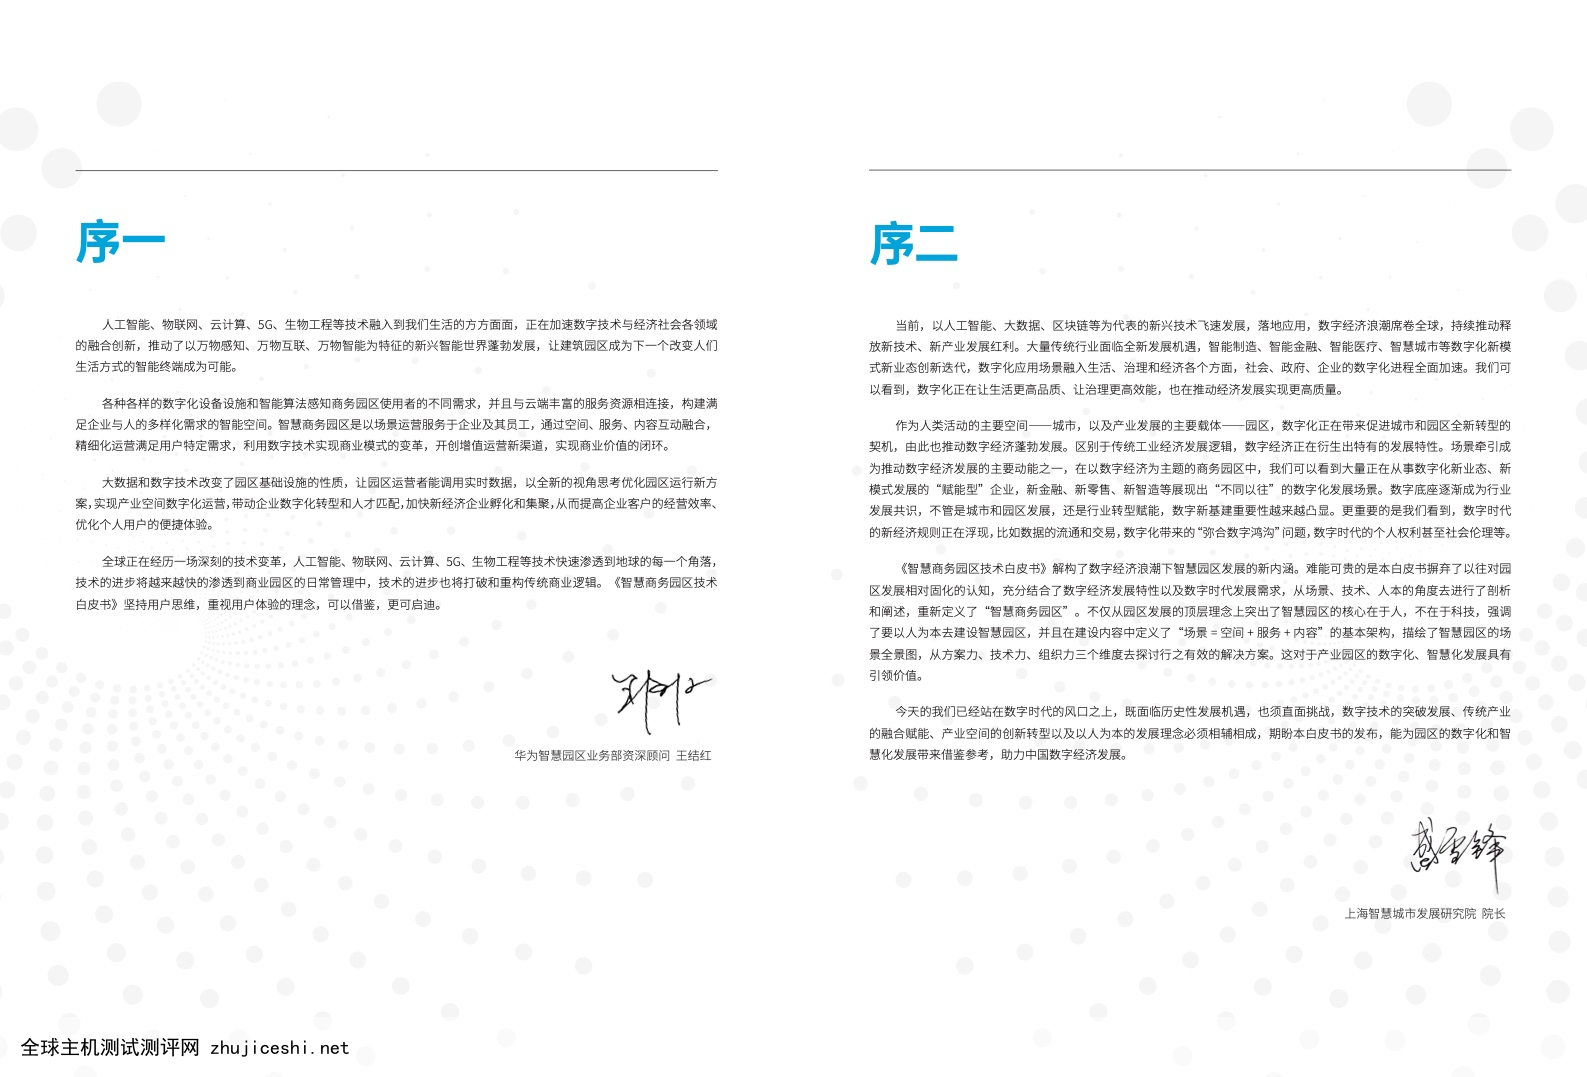 楷林&华为：2022智慧商务园区技术白皮书（附下载）